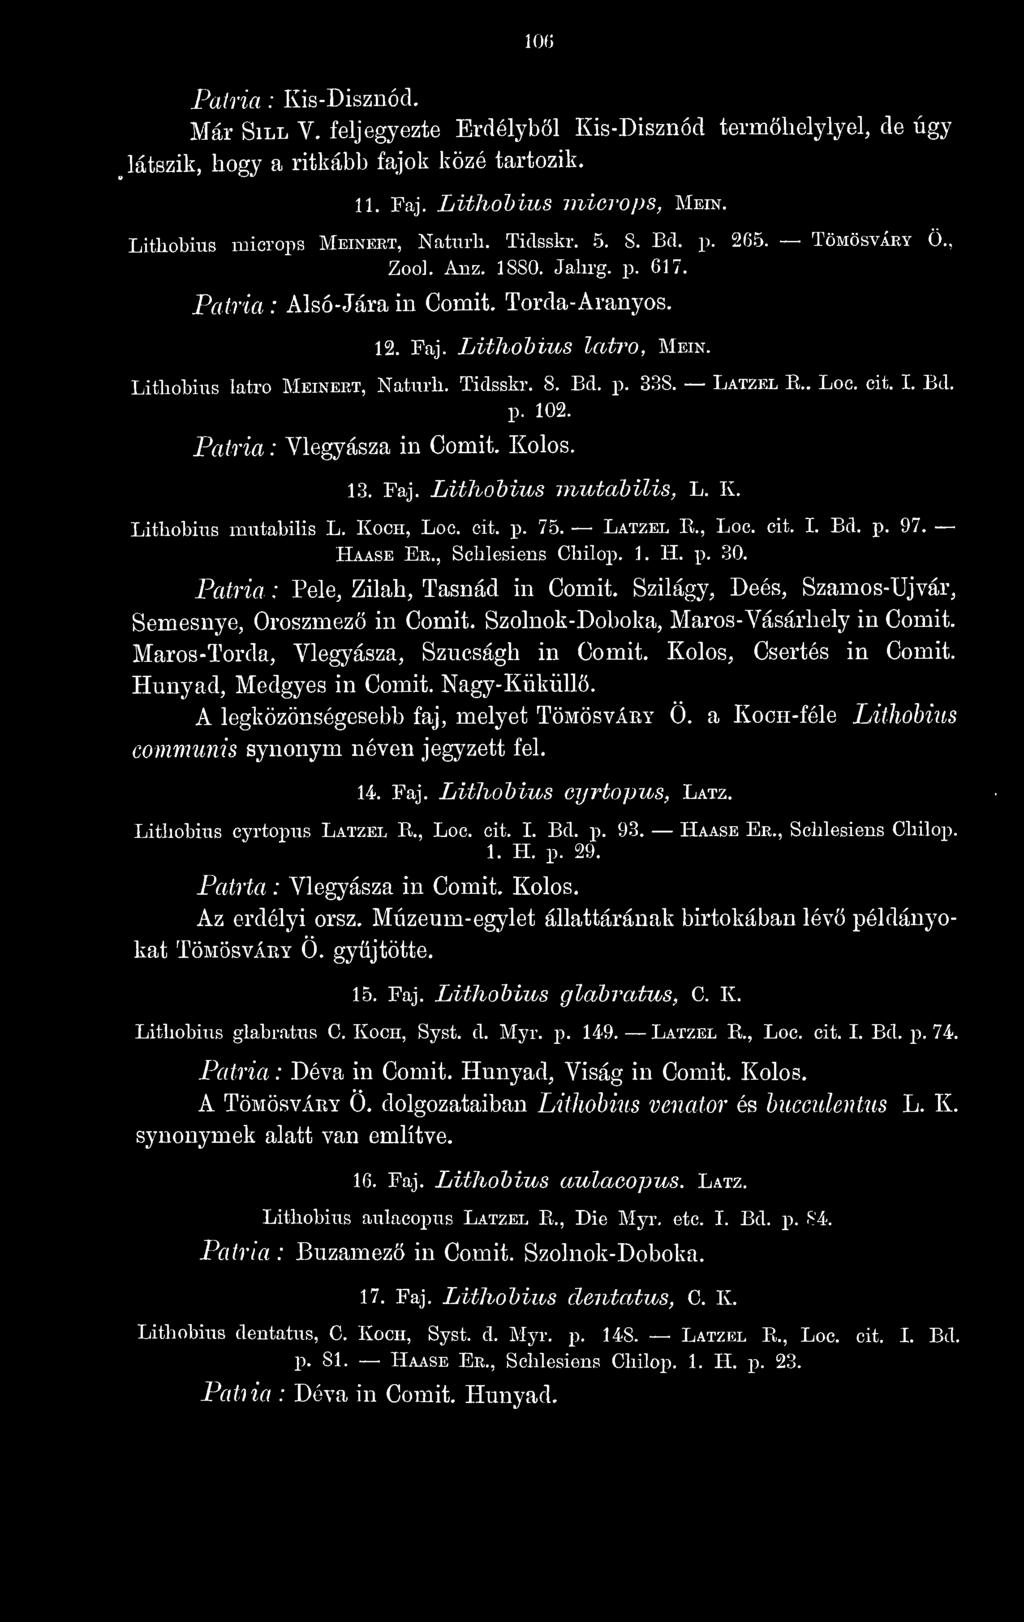 Latzel E.. Loc. cit. I. Bd. p. 102. Vlegyásza in Comit. Kolos. 13. Faj. Lithohius inutahilis, L. K. Lithobius mutabilis L. Koch, Loc. cit. p. 75. Latzel E., Loc. cit. I. Bd. p. 97. Haase Er.